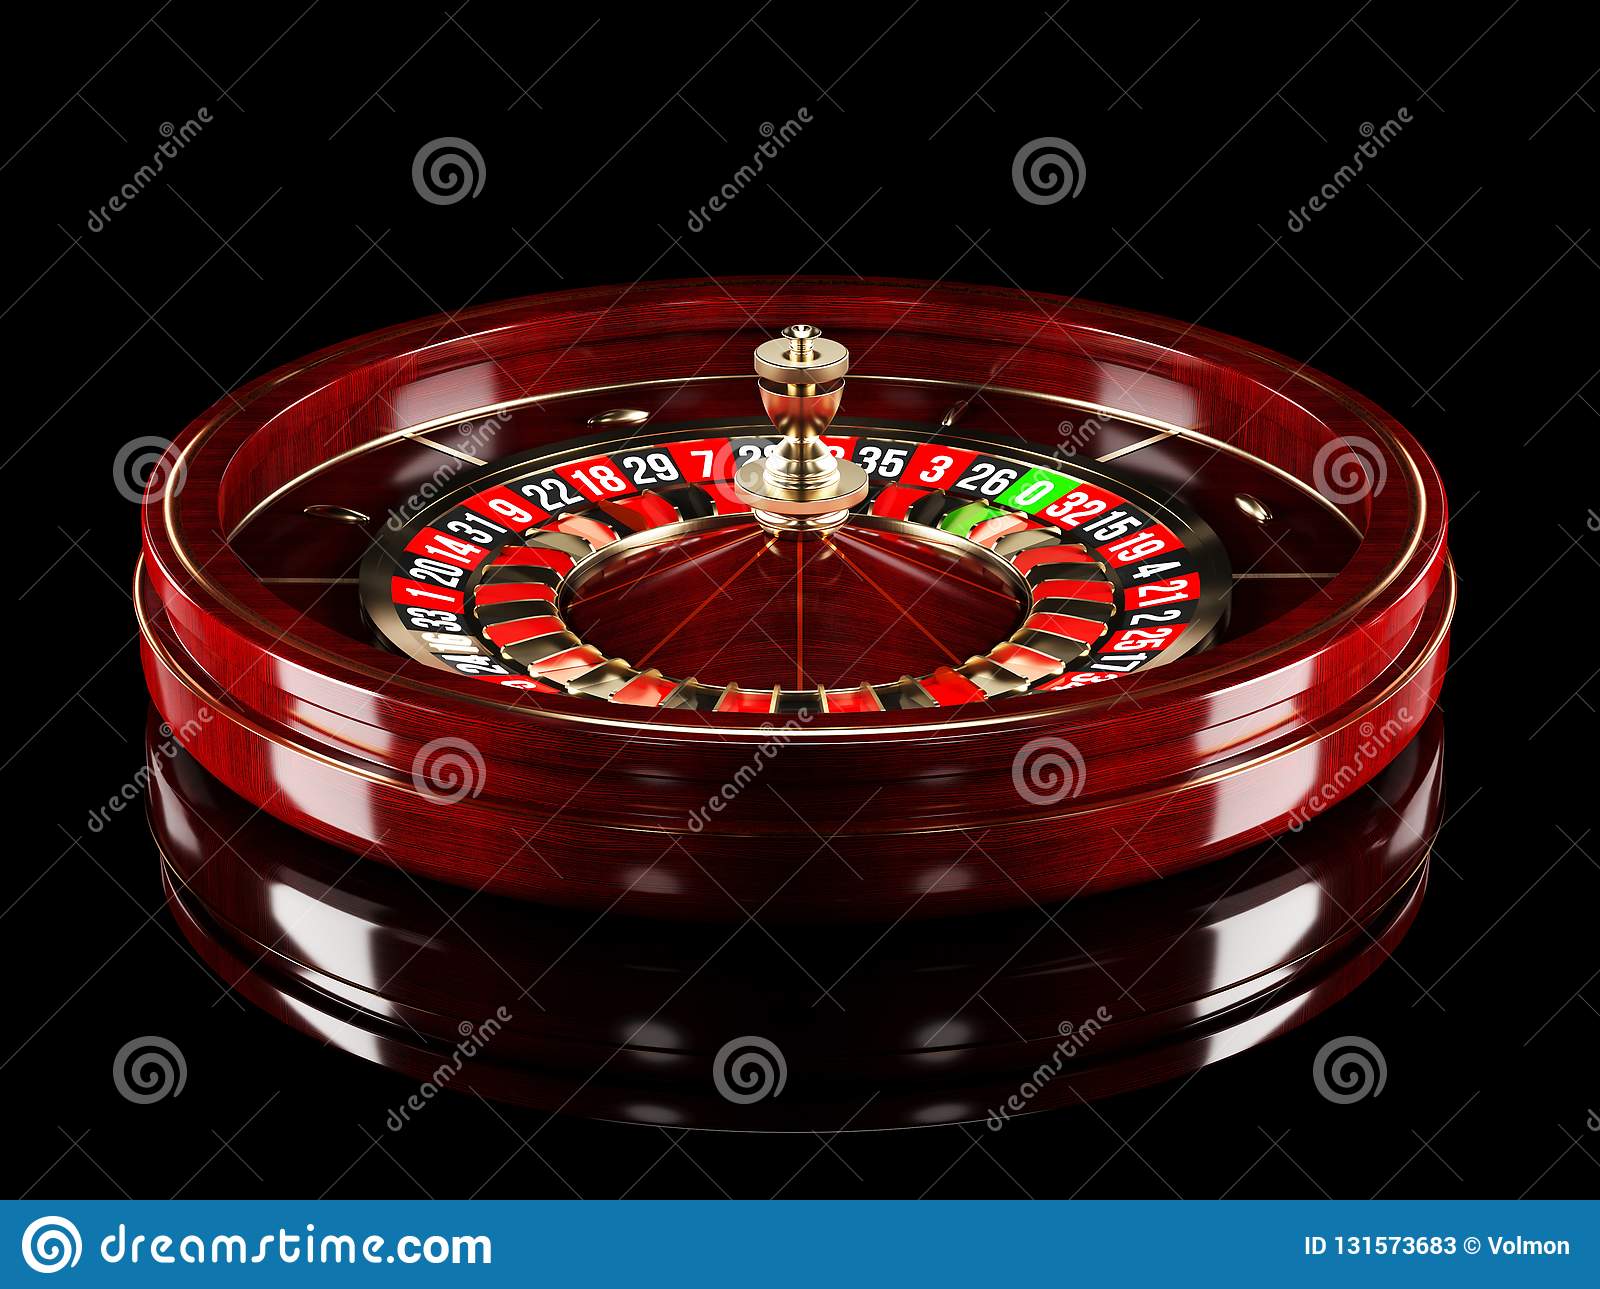 Juegos gratis de casino bingo